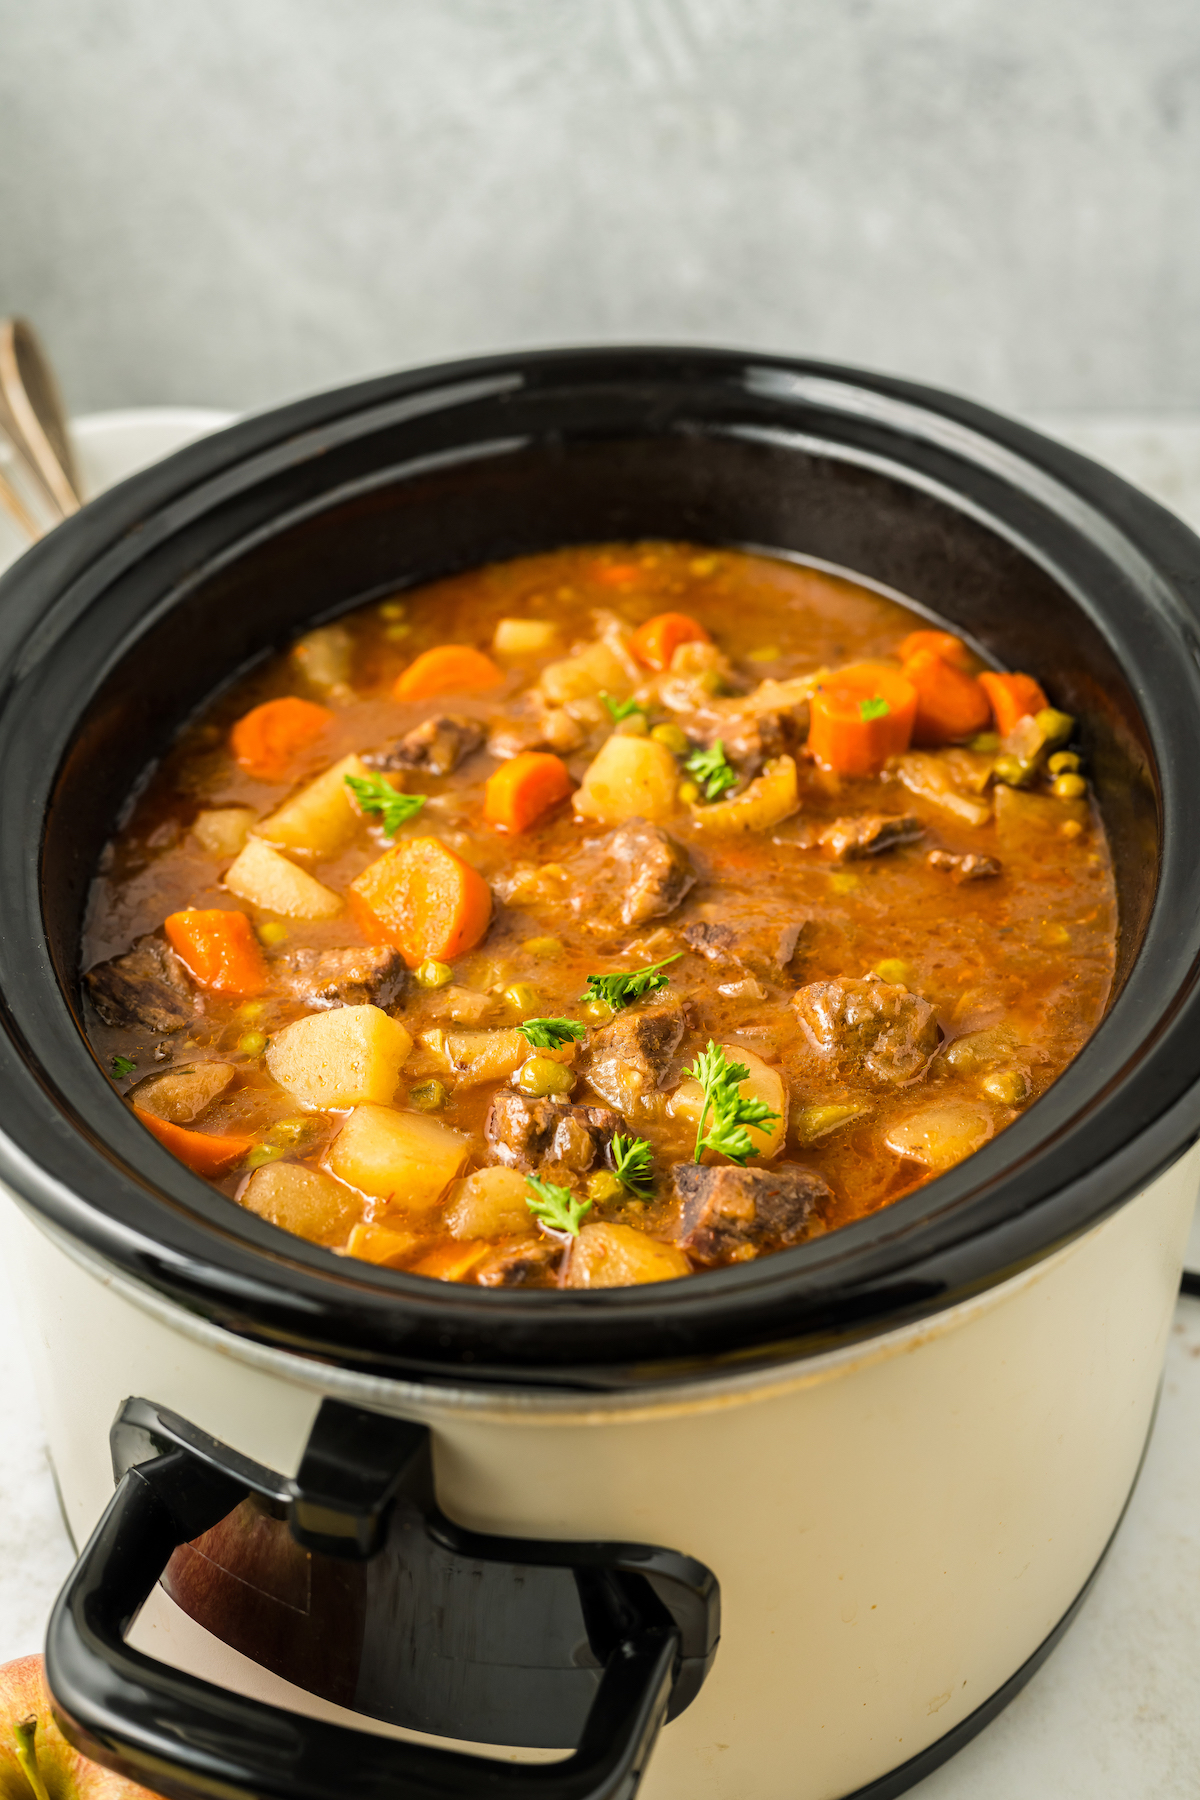 A crockpot full of homemade beef stew.